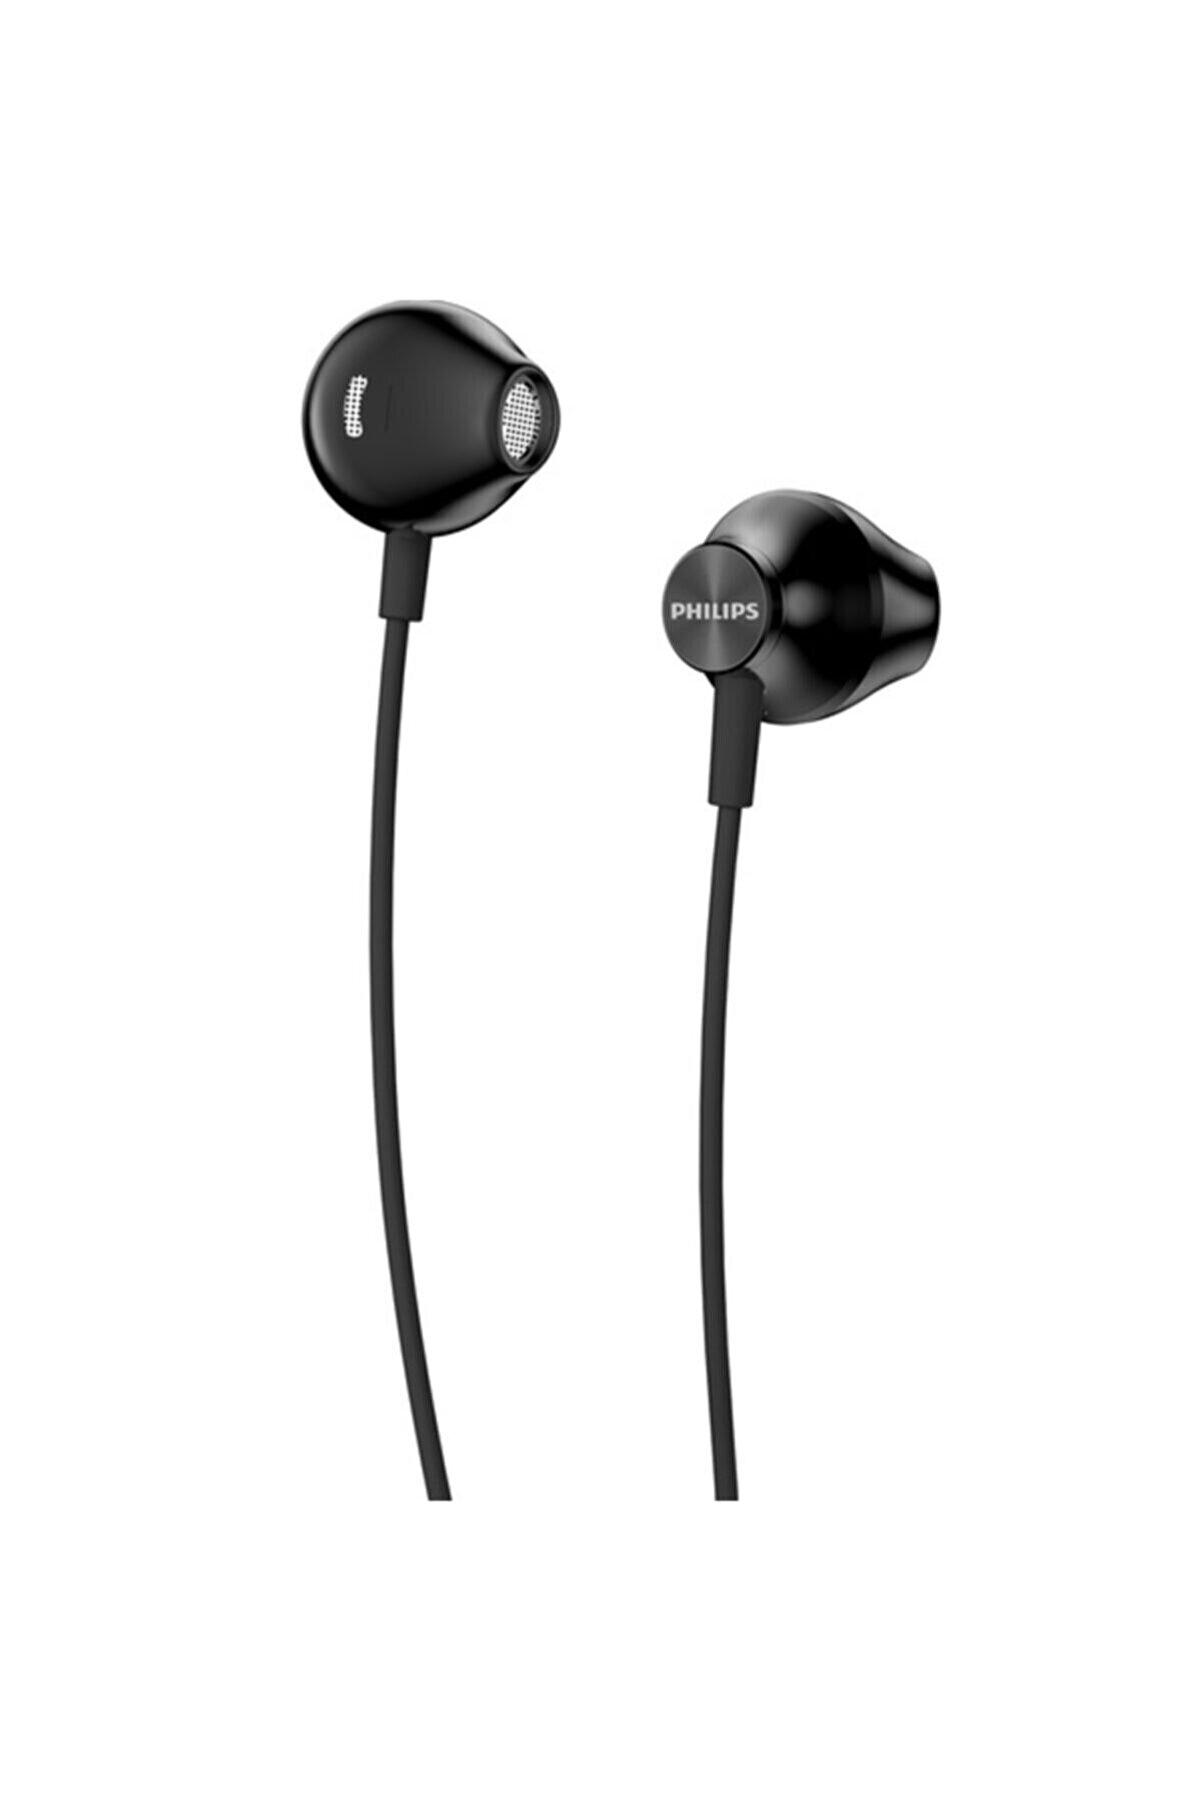 Philips Taue100 Kablolu Kulak Içi Kulaklık Siyah